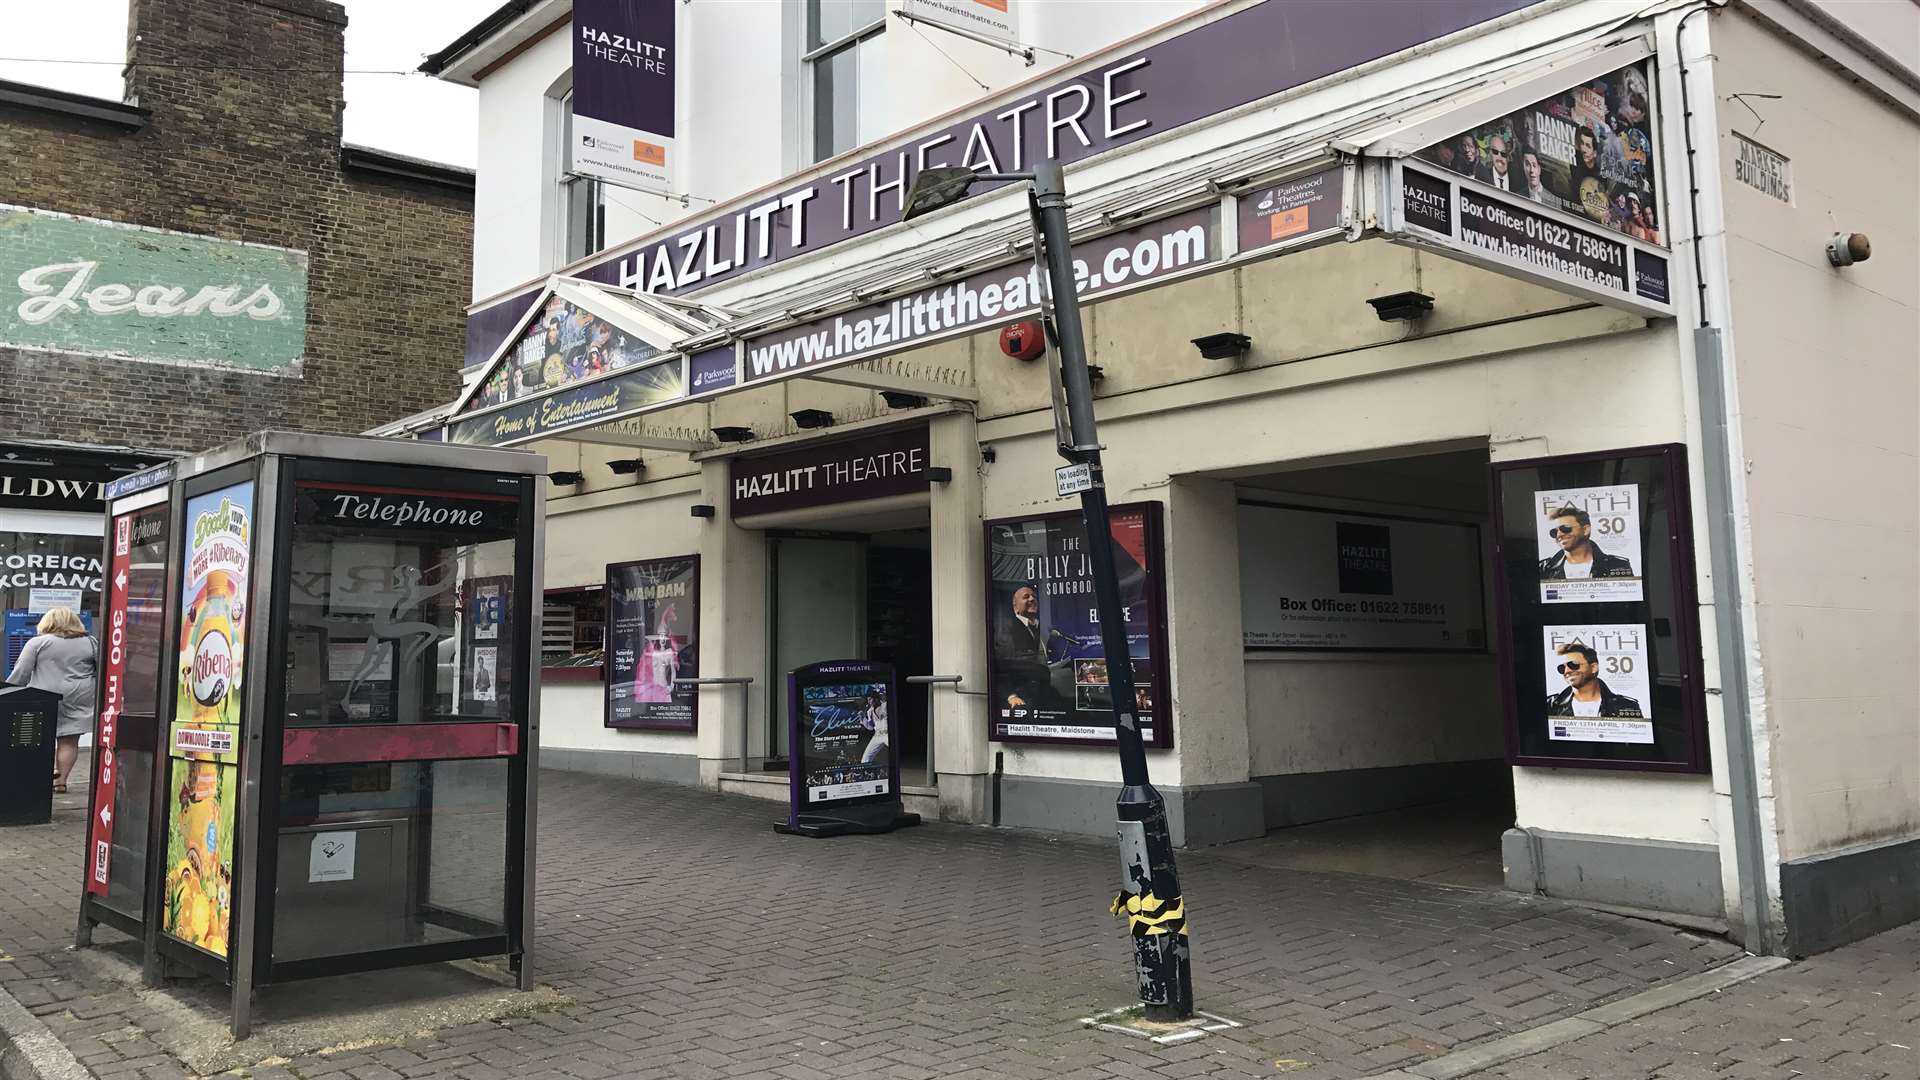 The Hazlitt Theatre in Earl Street